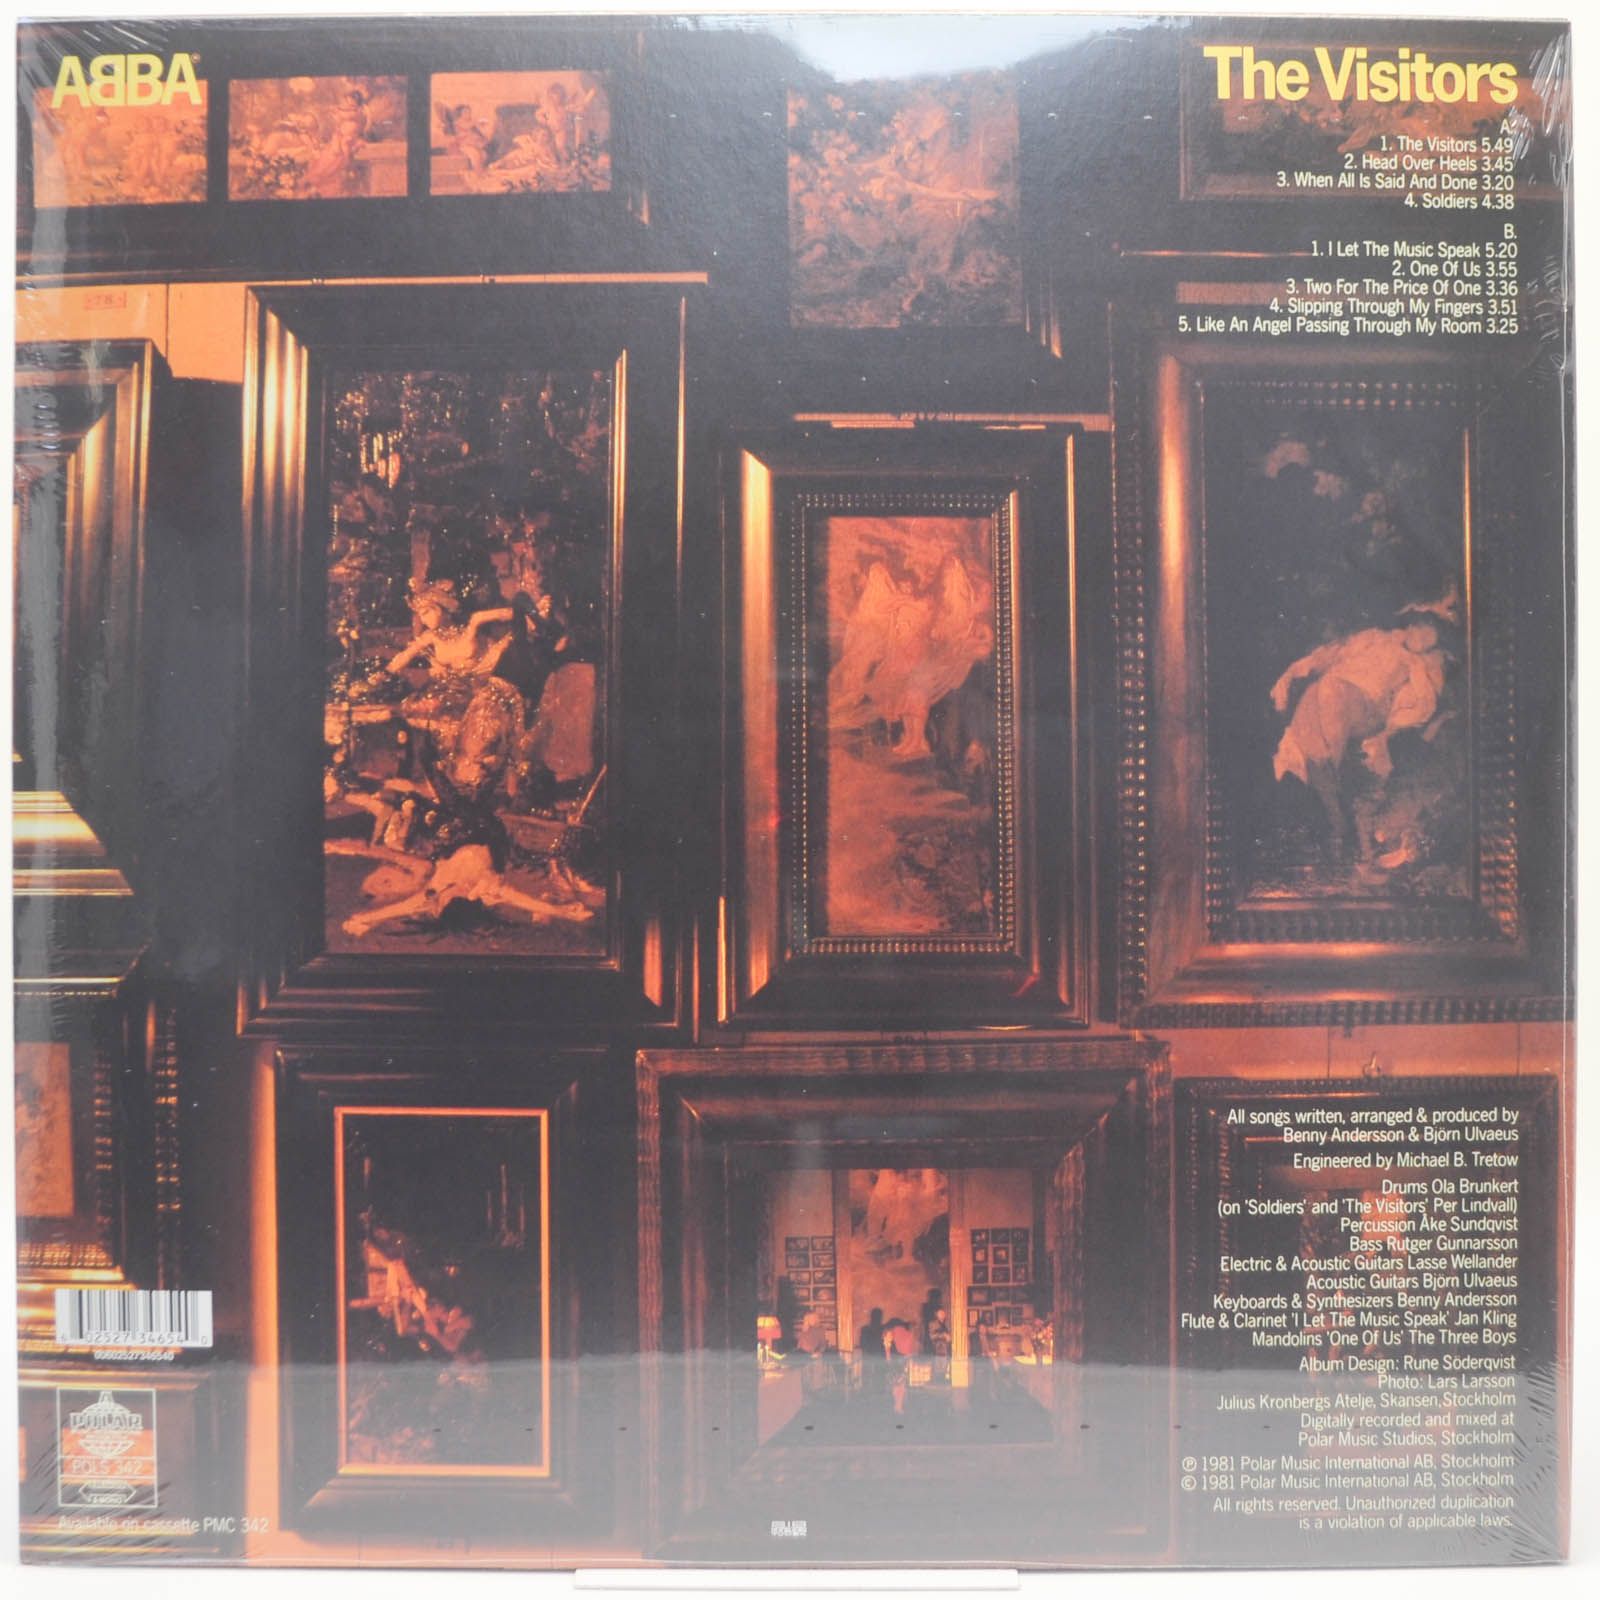 ABBA — The Visitors, 1981